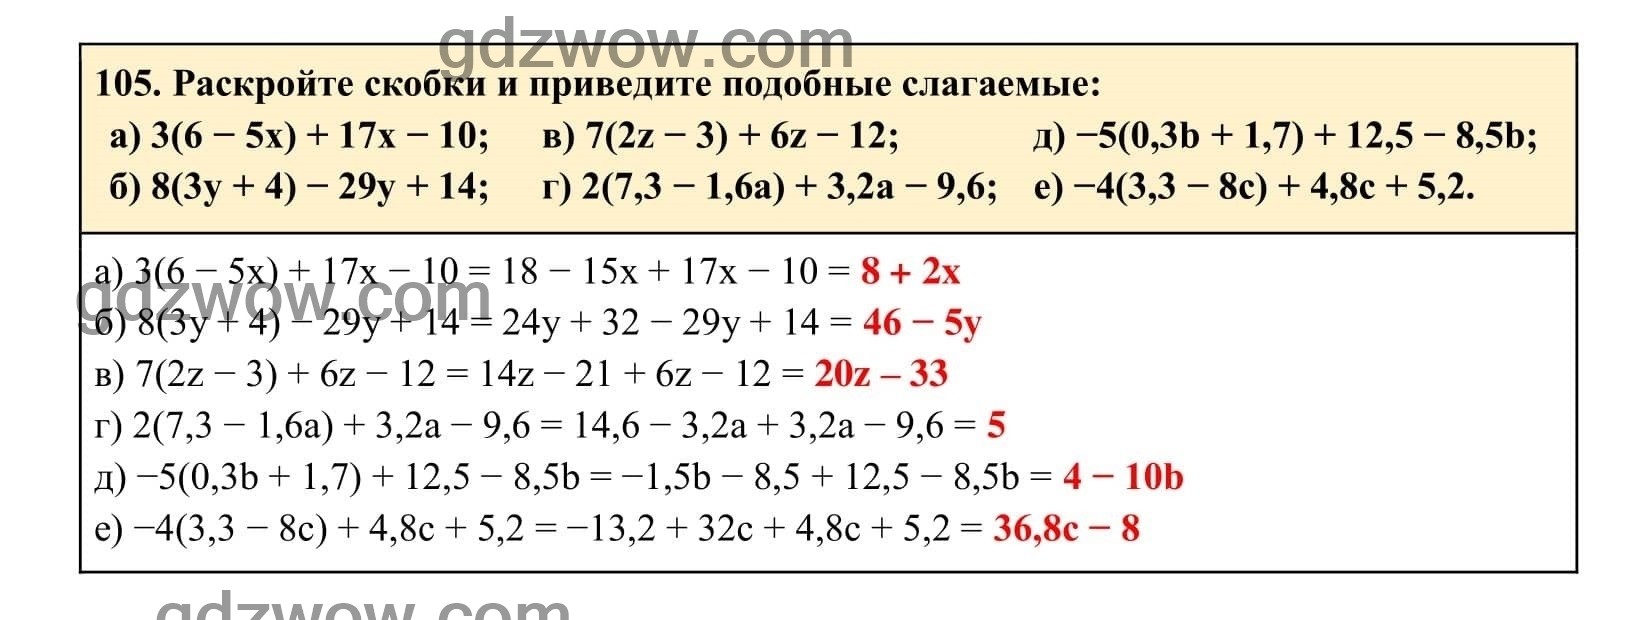 Упражнение 105 - ГДЗ по Алгебре 7 класс Учебник Макарычев (решебник) - GDZwow